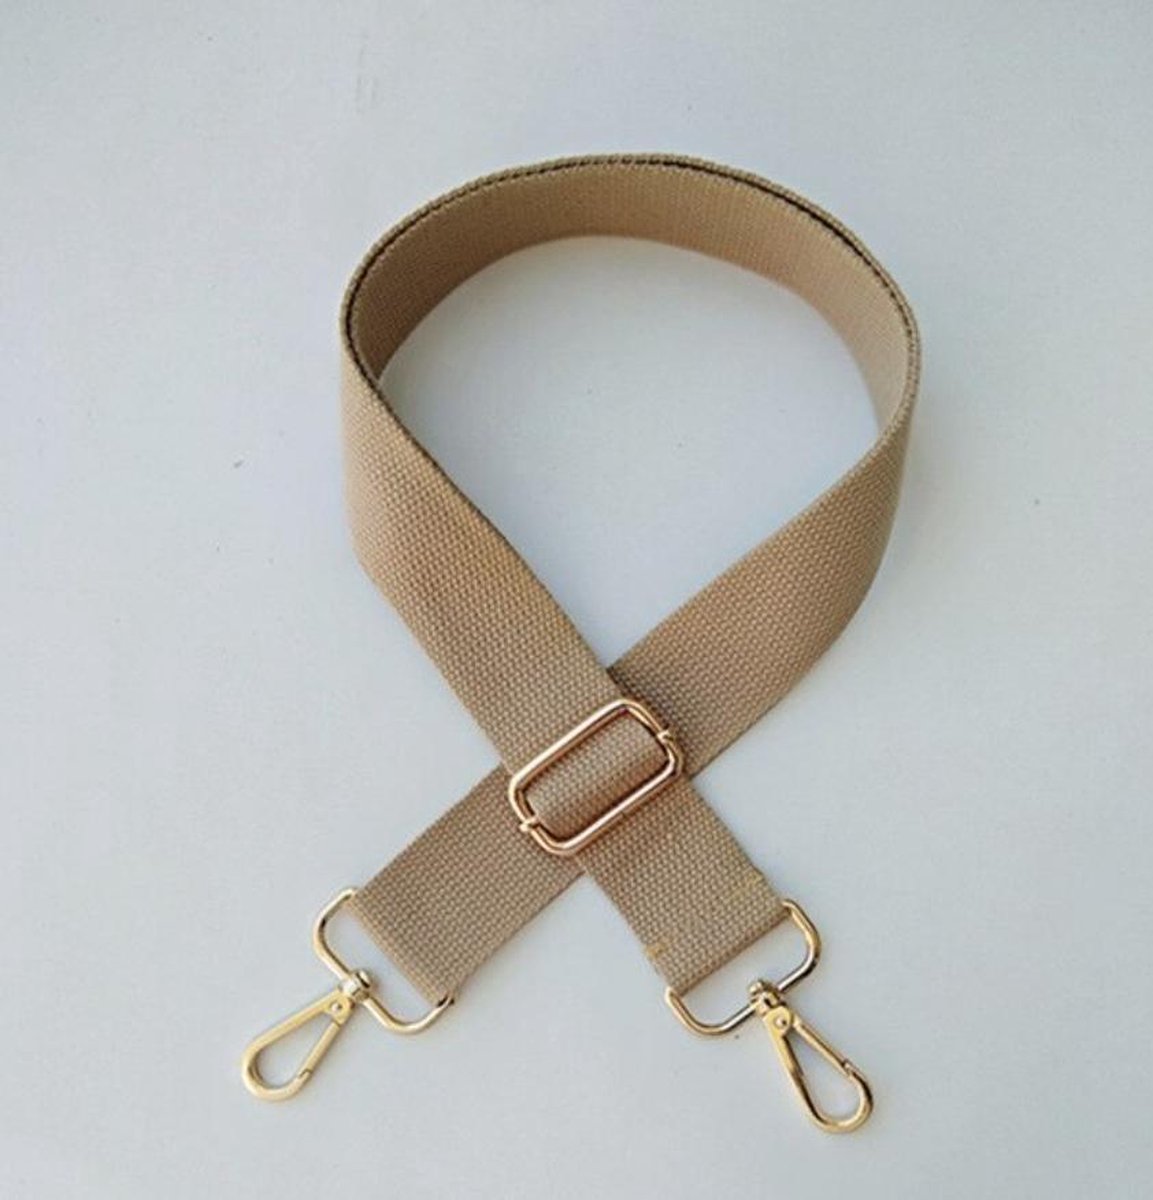 Bag strap - Tas strap - Tassen hengsel - 130 cm - Khaki - Merkloos